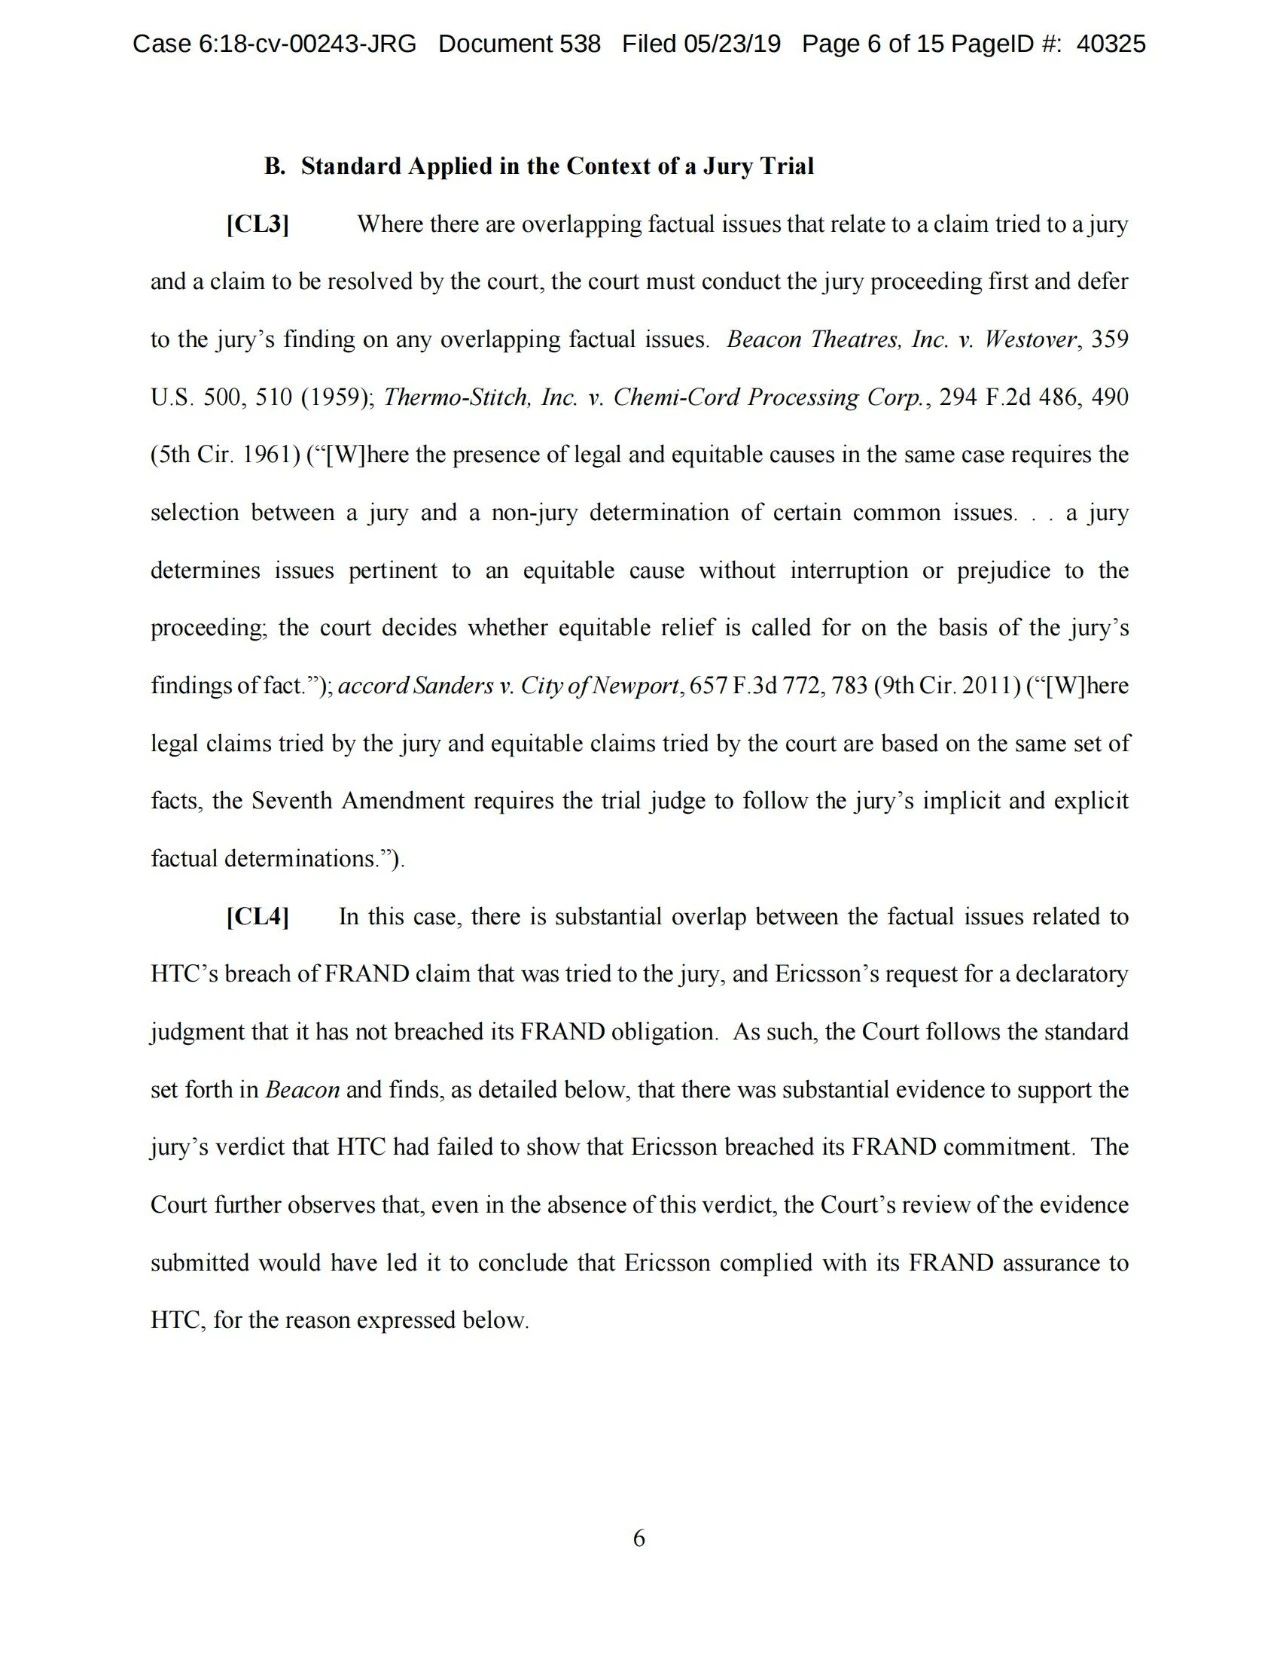 美国第五巡回上诉法院二审判决认定爱立信符合FRAND承诺